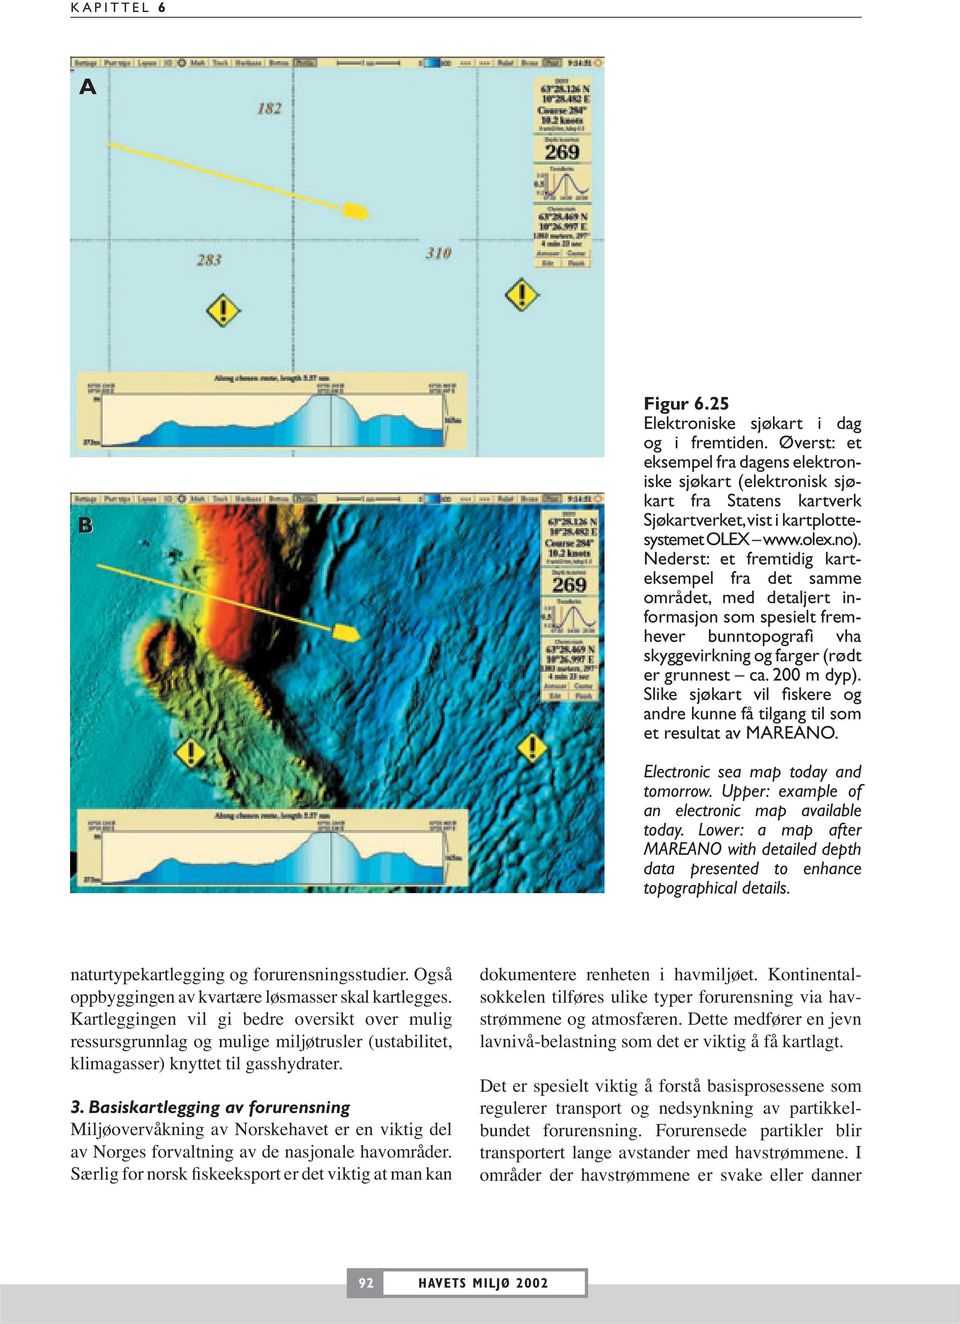 Nederst: et fremtidig karteksempel fra det samme området, med detaljert informasjon som spesielt fremhever bunntopografi vha skyggevirkning og farger (rødt er grunnest ca. 200 m dyp).